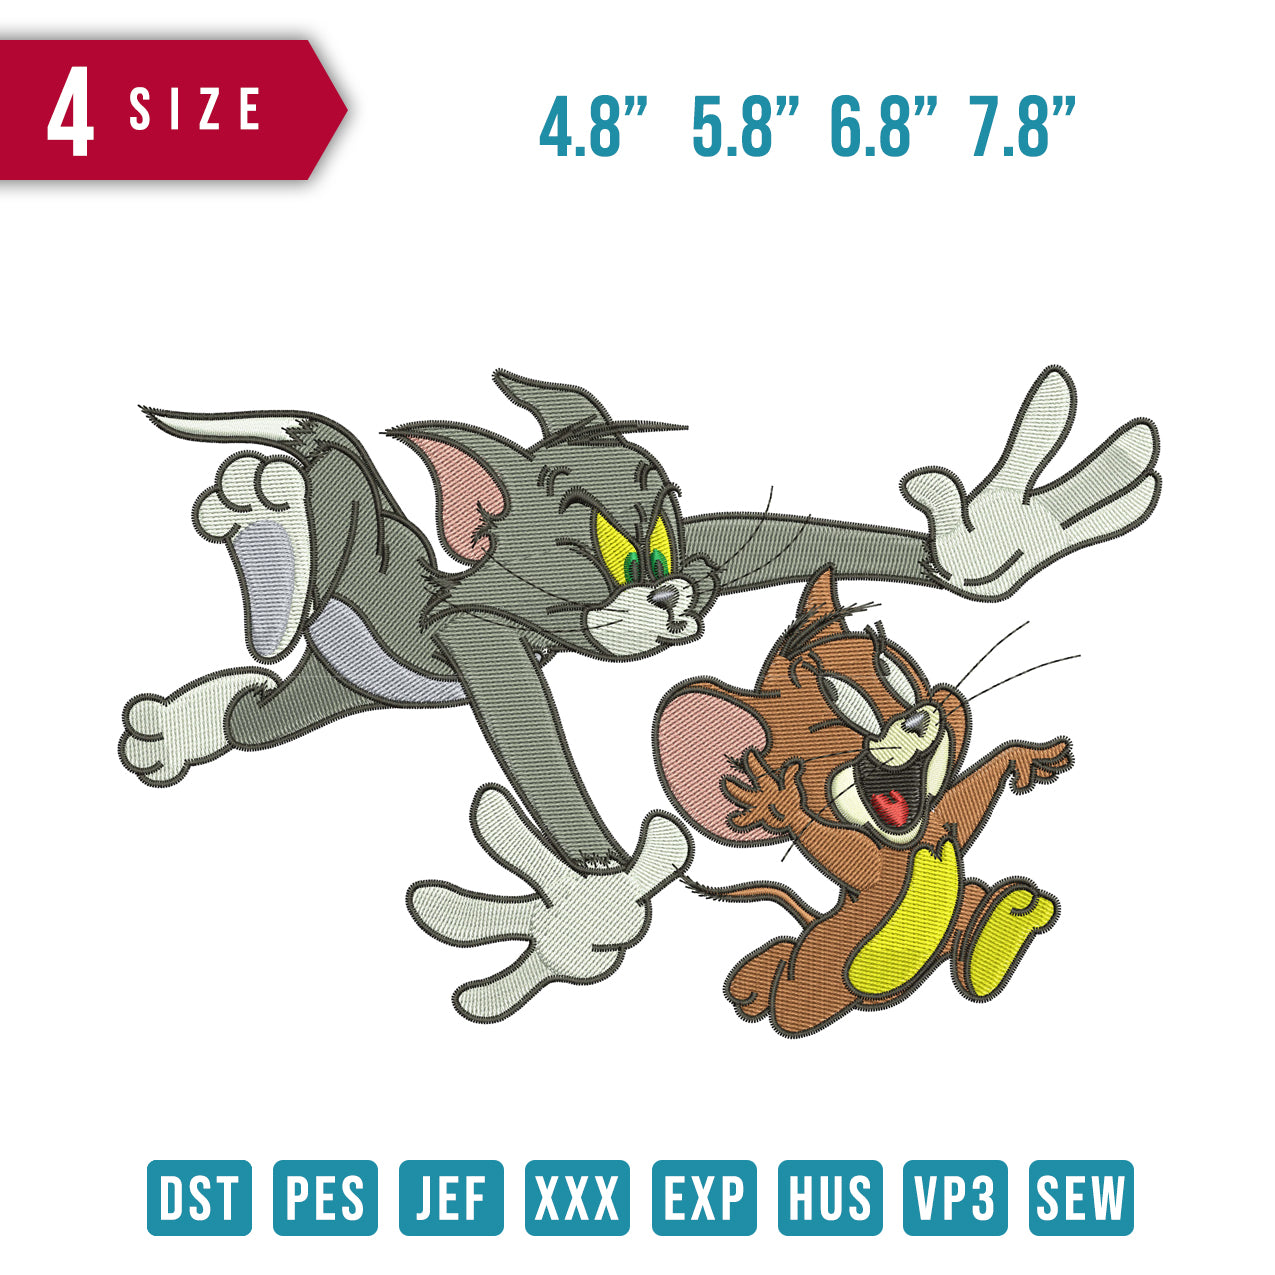 Tom und Jerry jagen